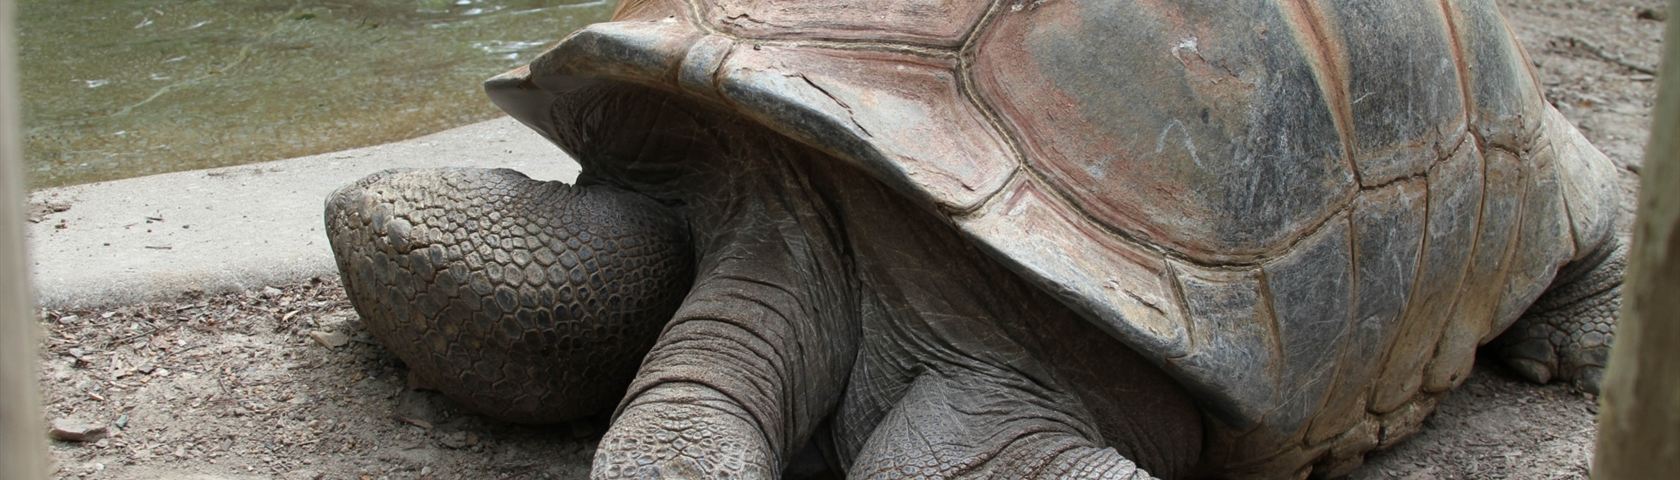 One Big Tortoise